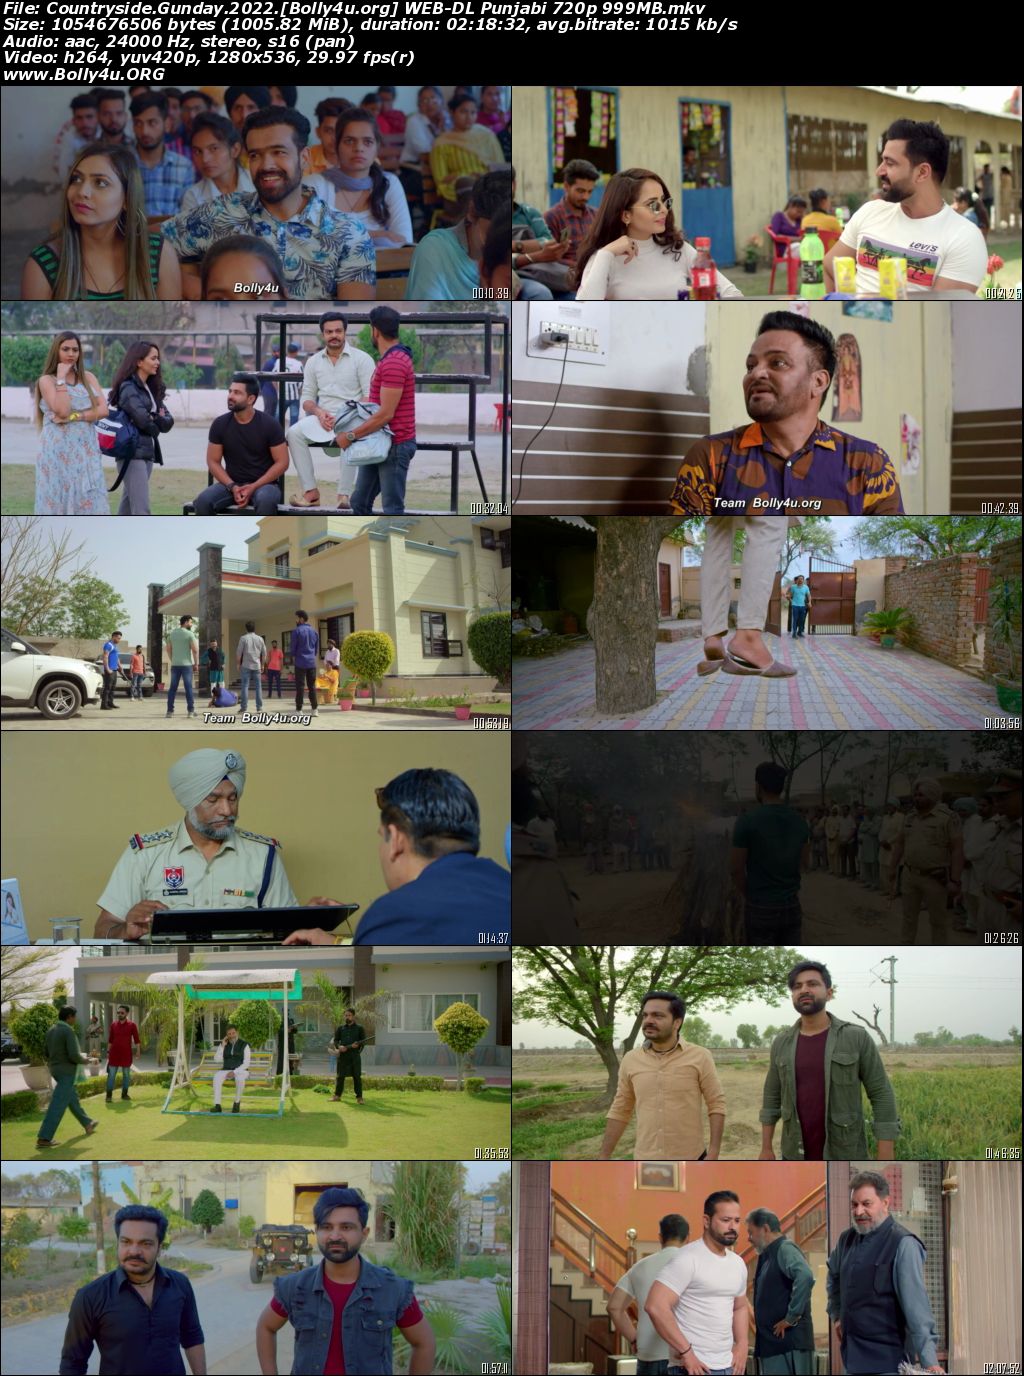 Countryside Gunday 2022 WEB-DL Punjabi Full Movie Download